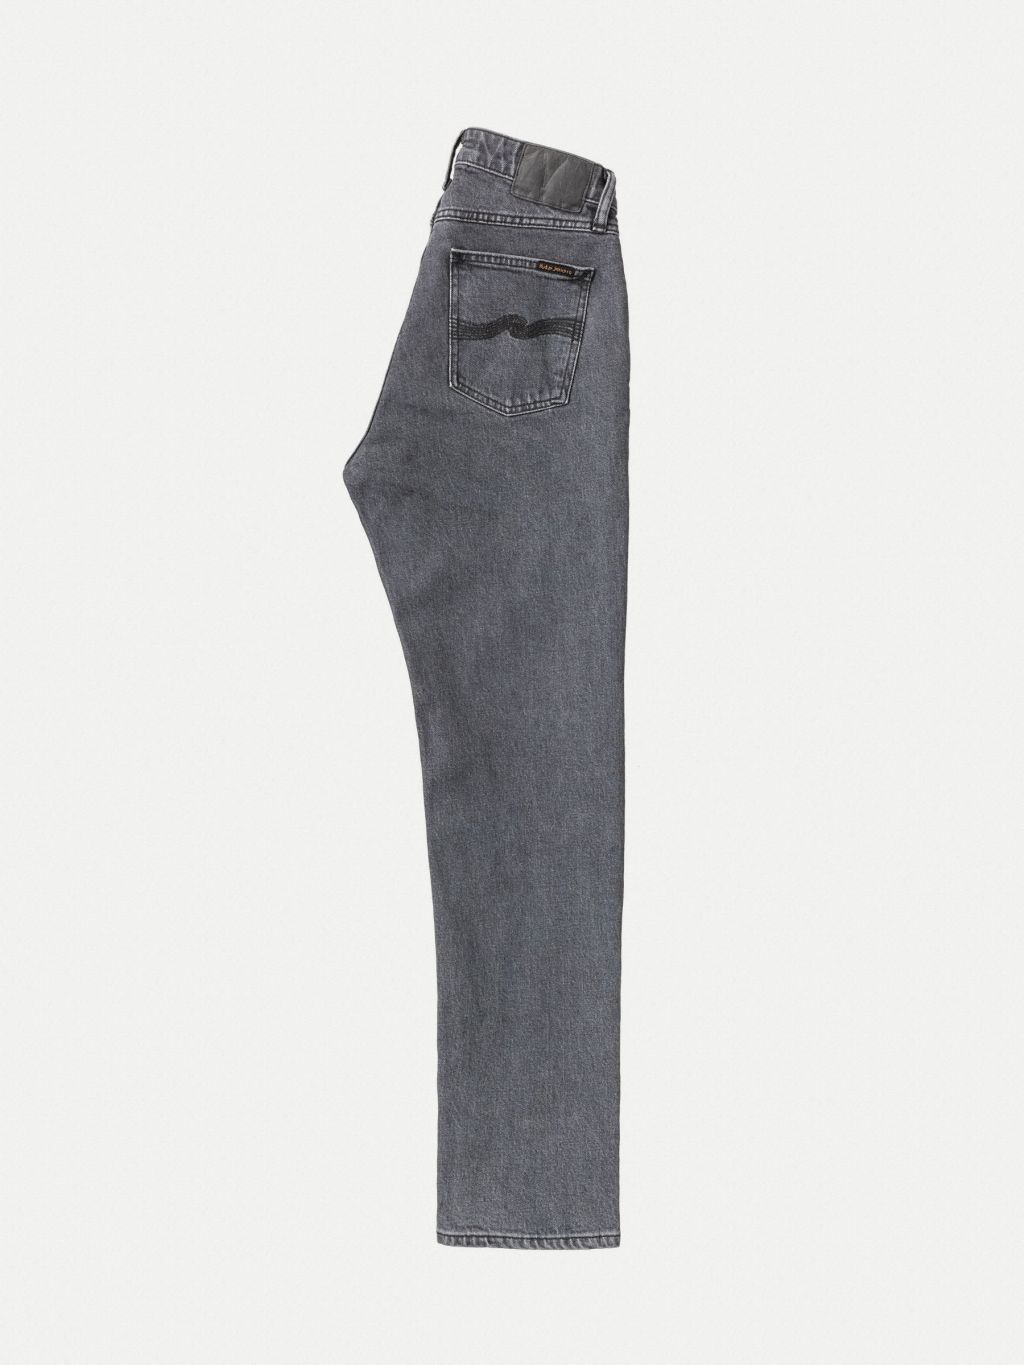 Straight Sally Mid Waist Jeans - Grey Ash 27/30